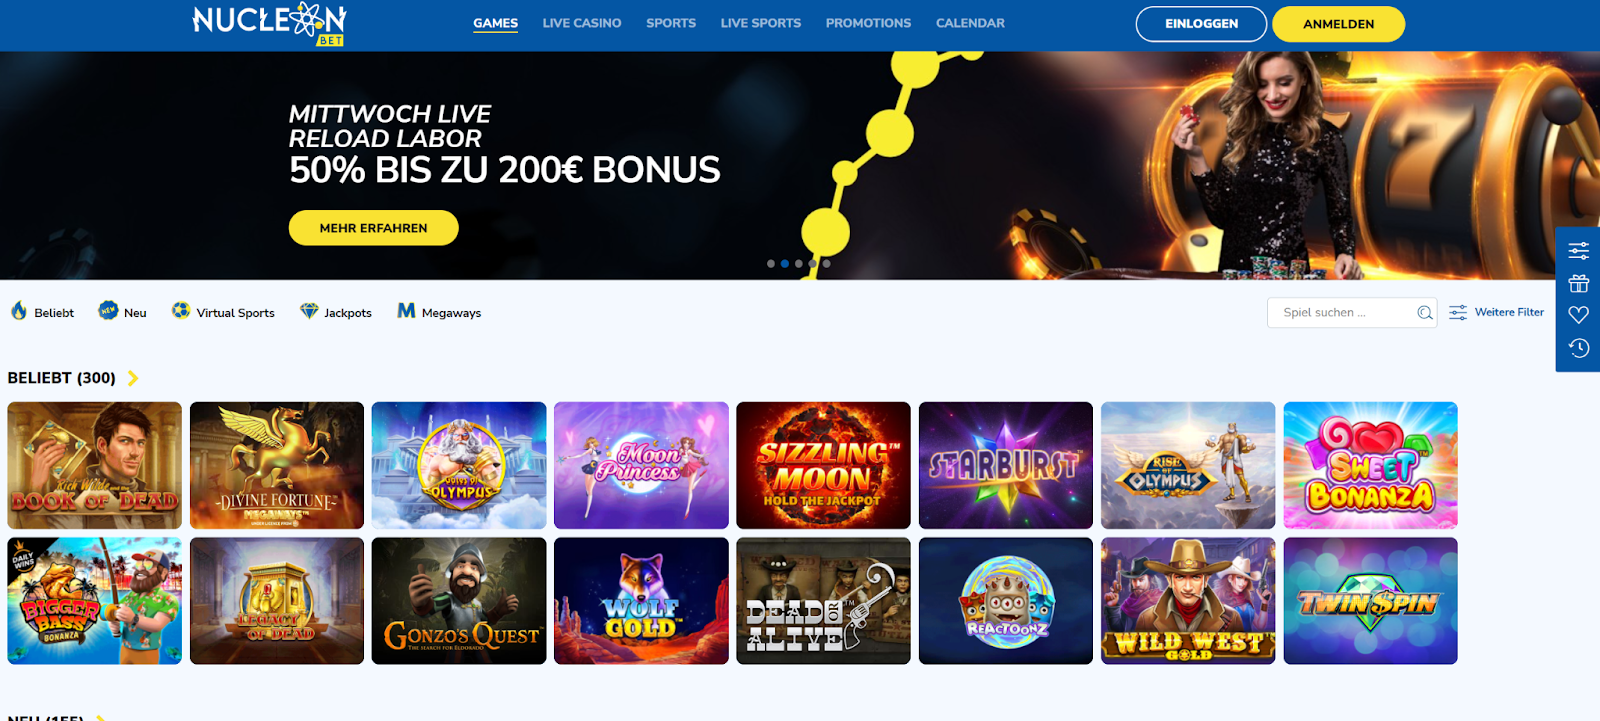 Startseite des Online-Casinos Nucleonbet